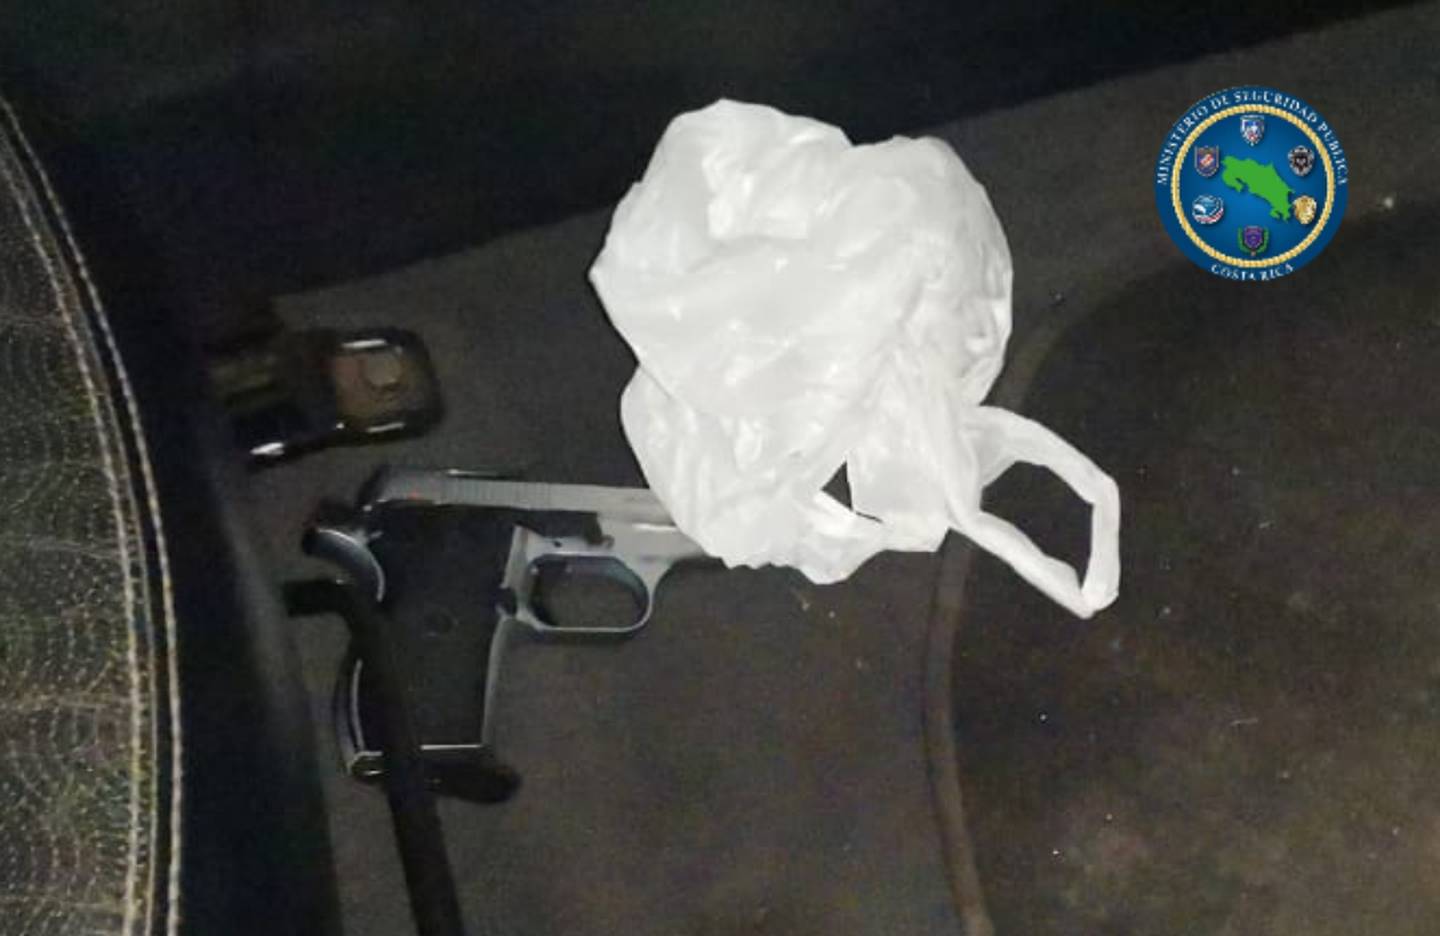 En el piso del auto estaba esta pistola que, al parecer, sería la usada para ultimar al sujeto en Quebrada Ganado. Foto: Cortesía MSP.